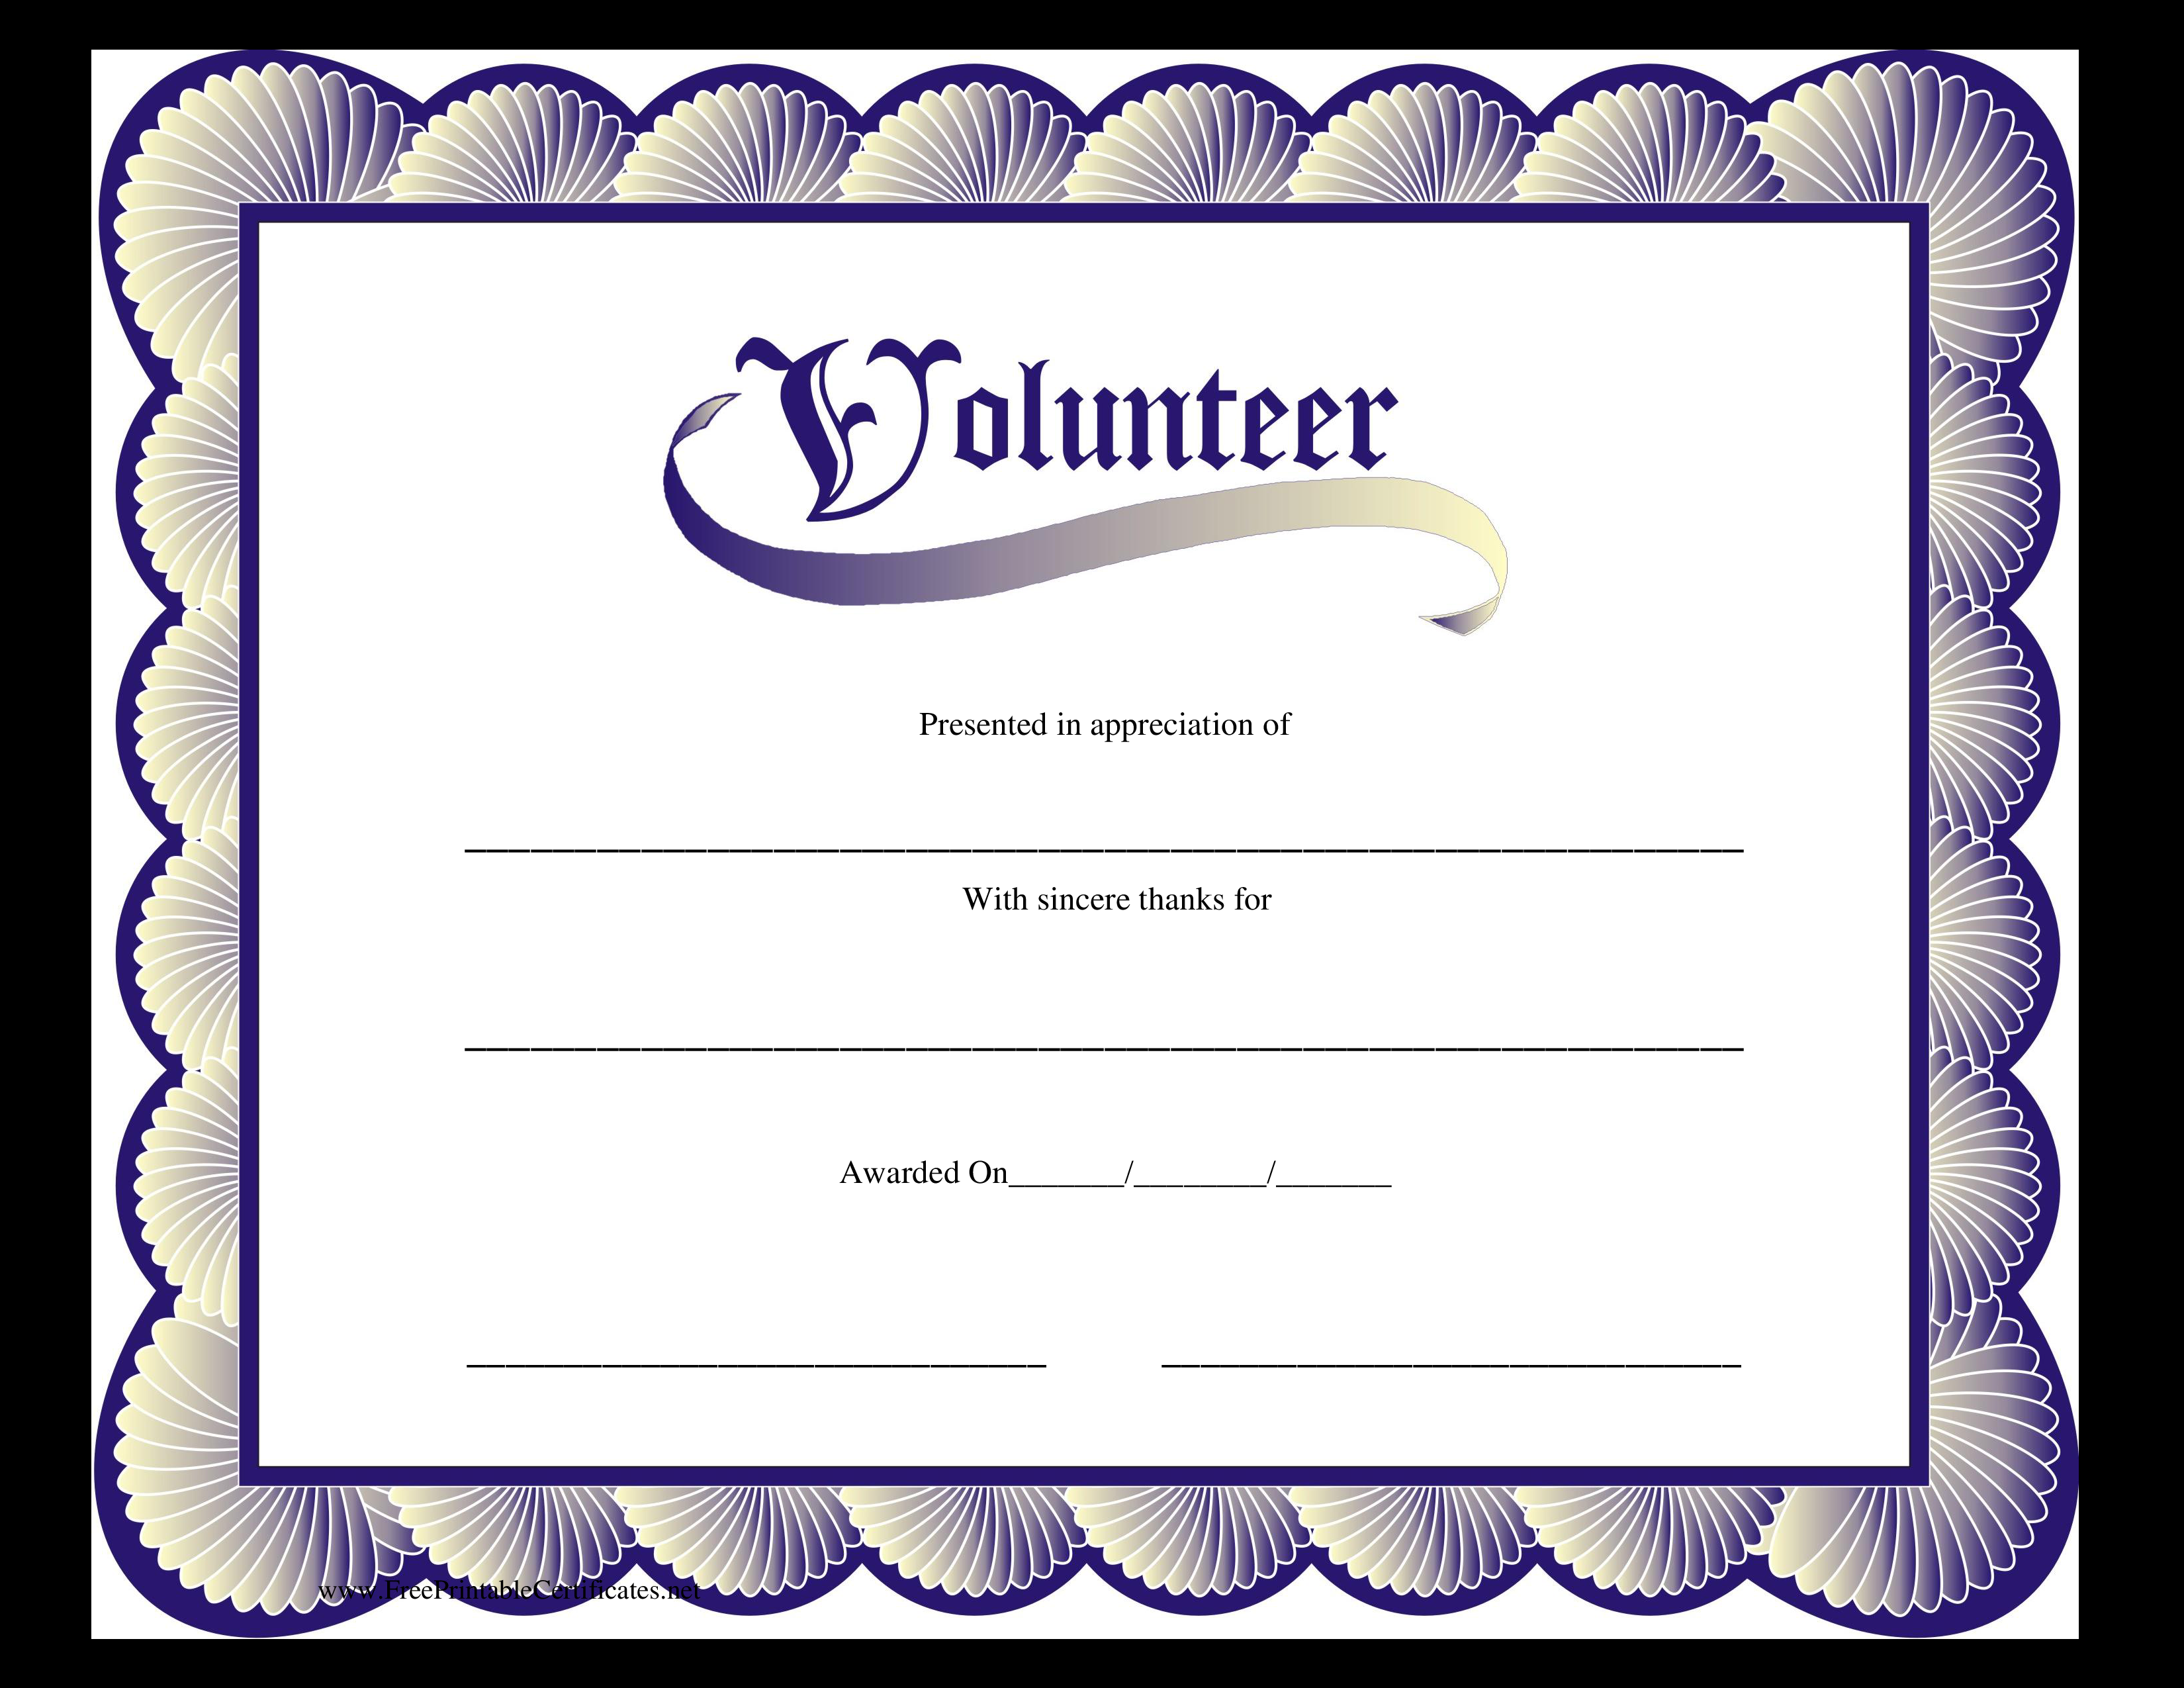 Kostenloses Volunteer Certificate With Volunteer Award Certificate Template